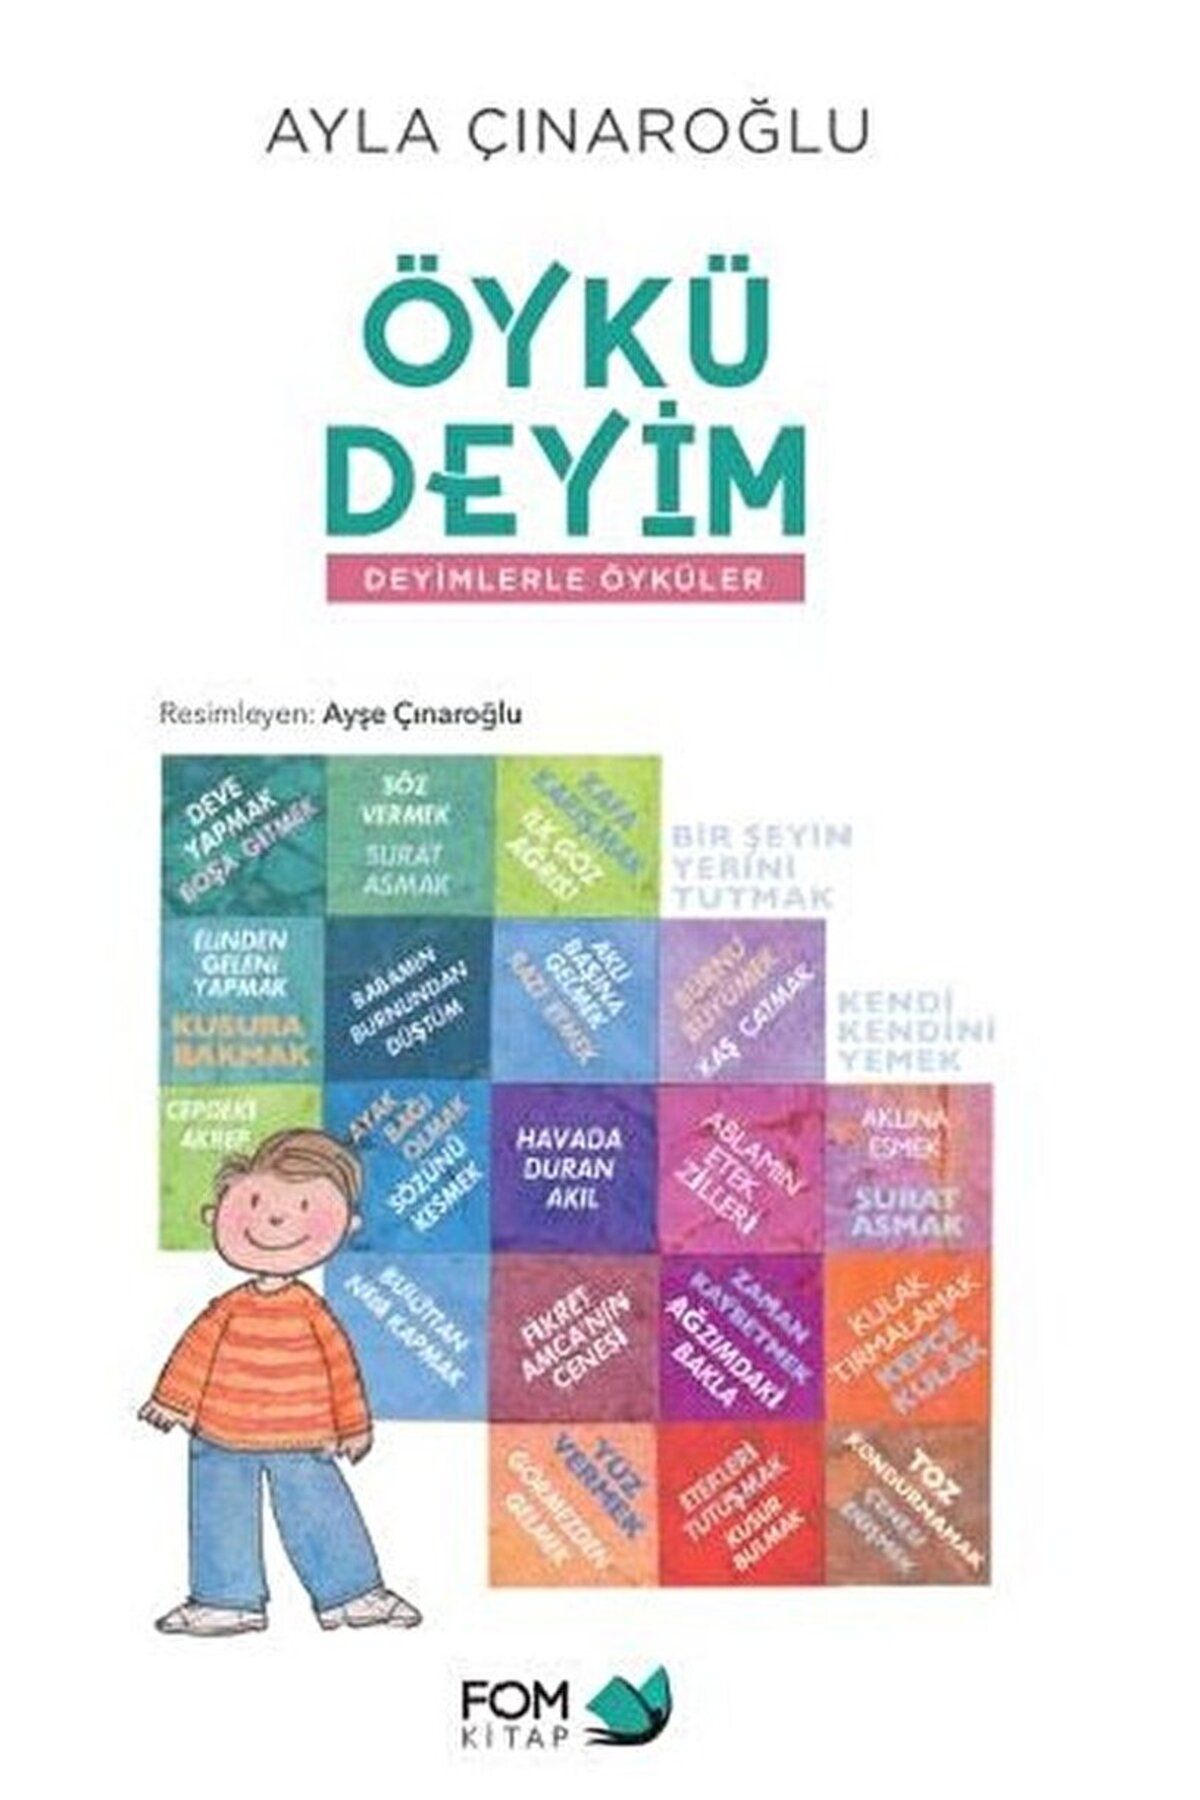 Fom Kitap Yayınları Öykü Deyim - Deyimlerle Öyküler / Ayla Çınaroğlu / FOM Kitap / 9786059166799